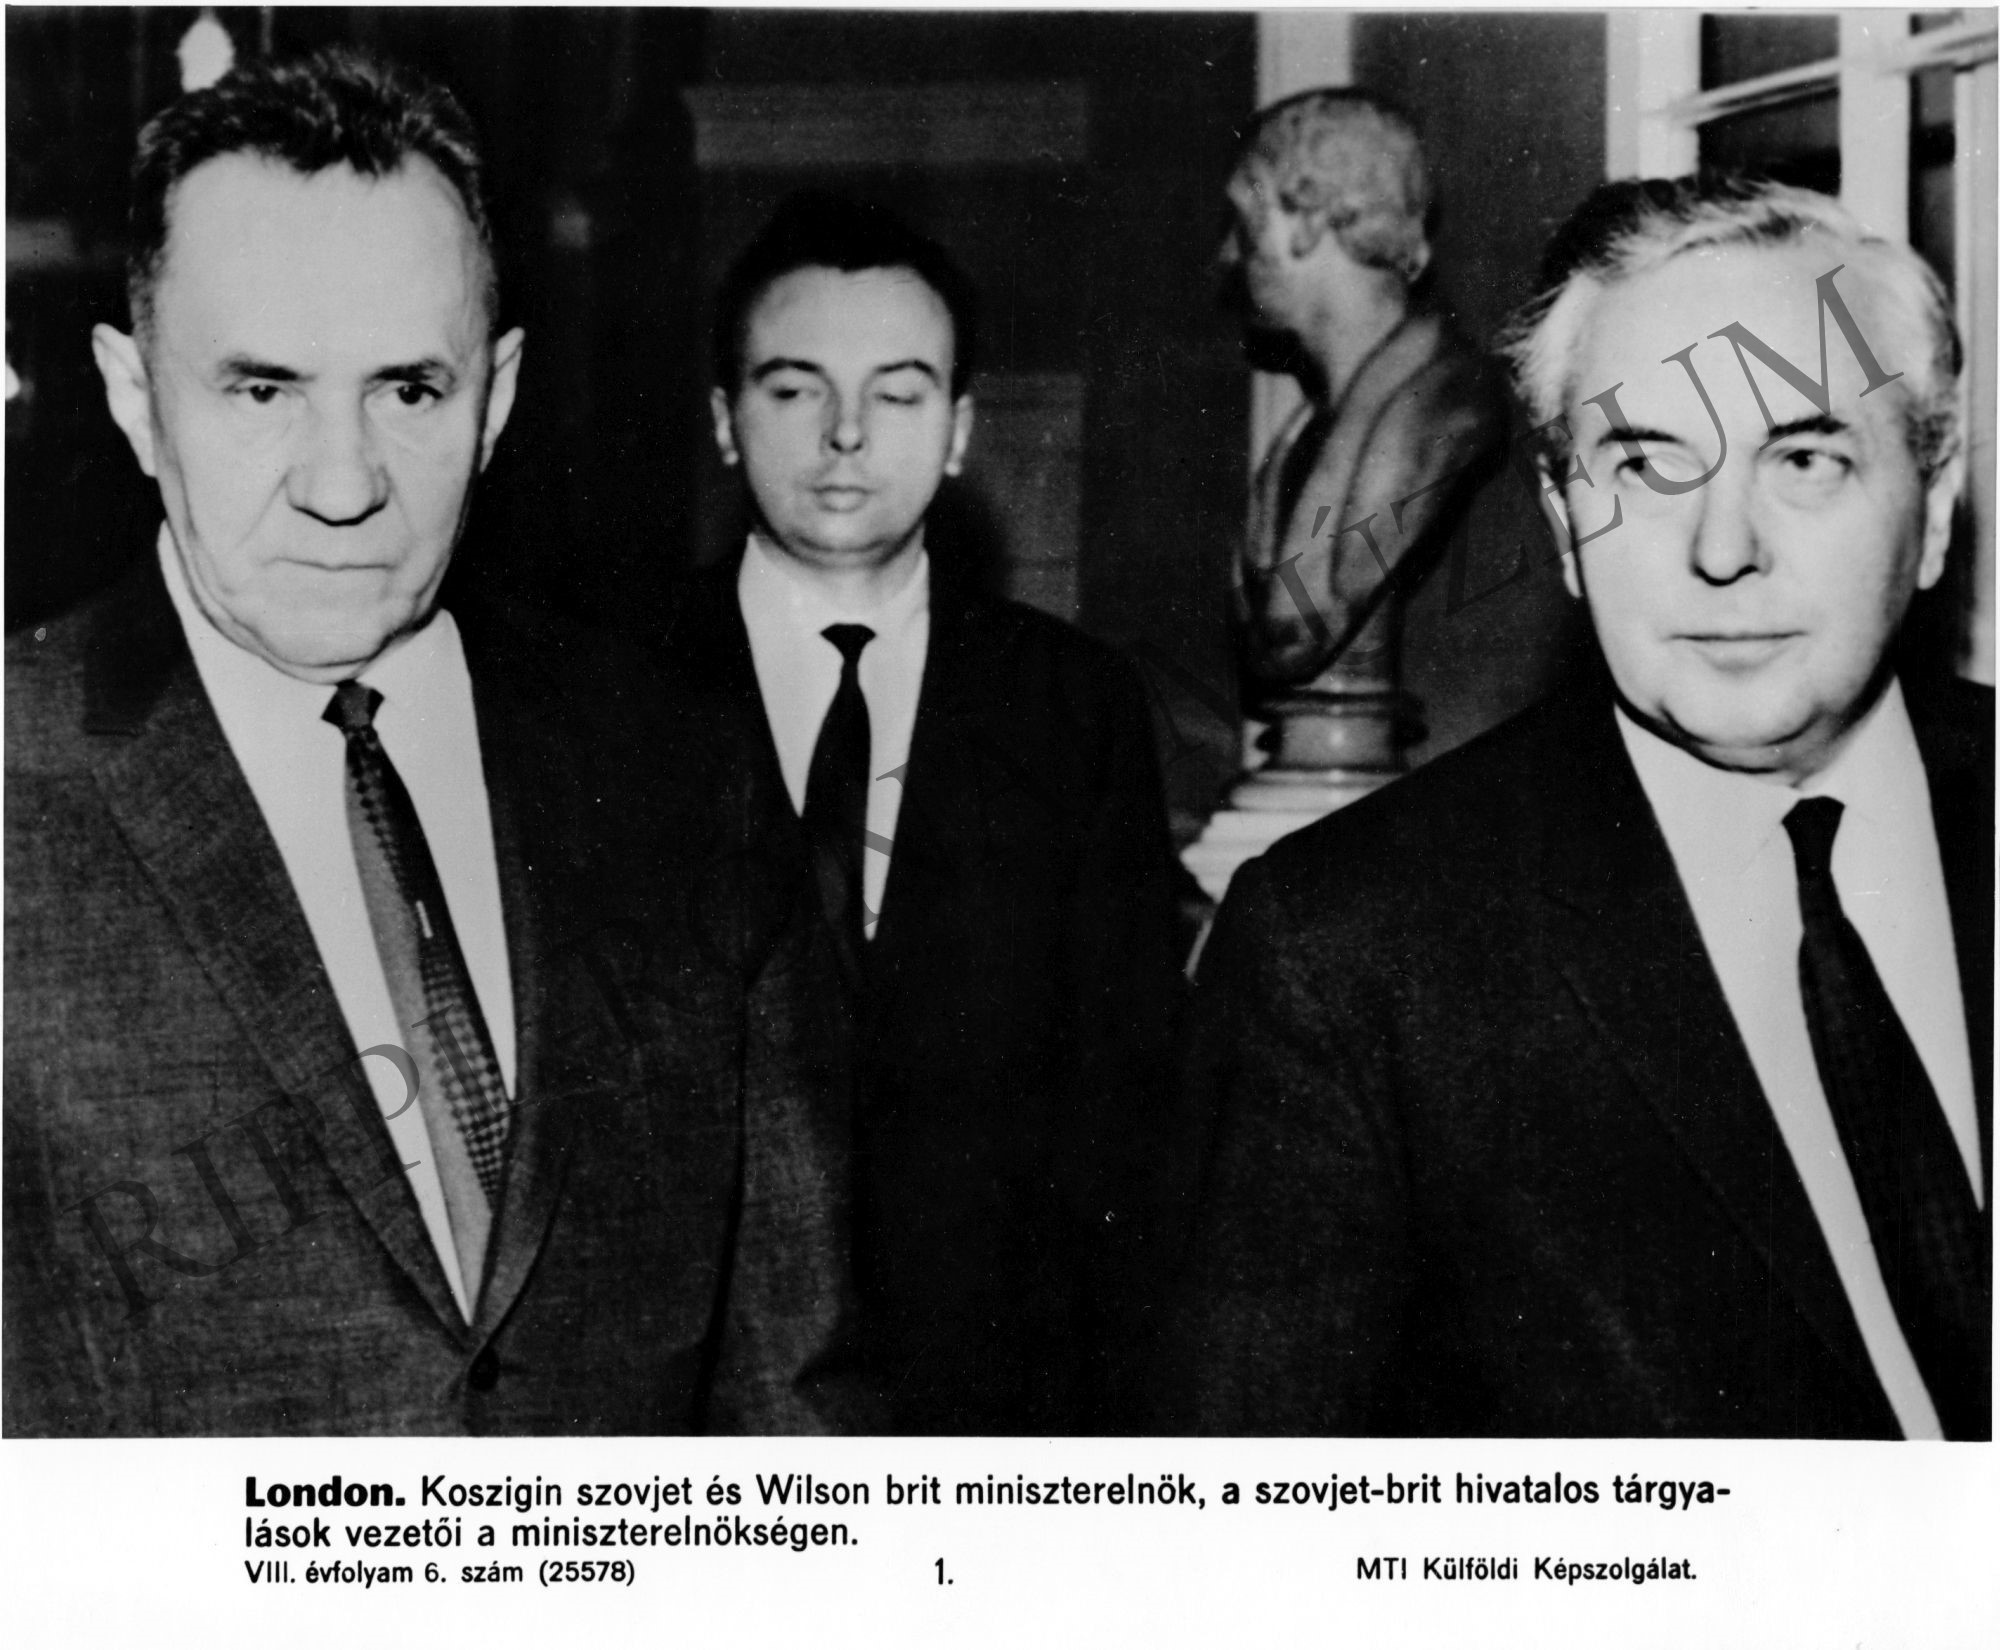 Koszigin szovjet és Wilson brit miniszterelnök, a szovjet-brit hivatalos tárgyalások vezetői a miniszterelnökségen. (Rippl-Rónai Múzeum CC BY-NC-SA)